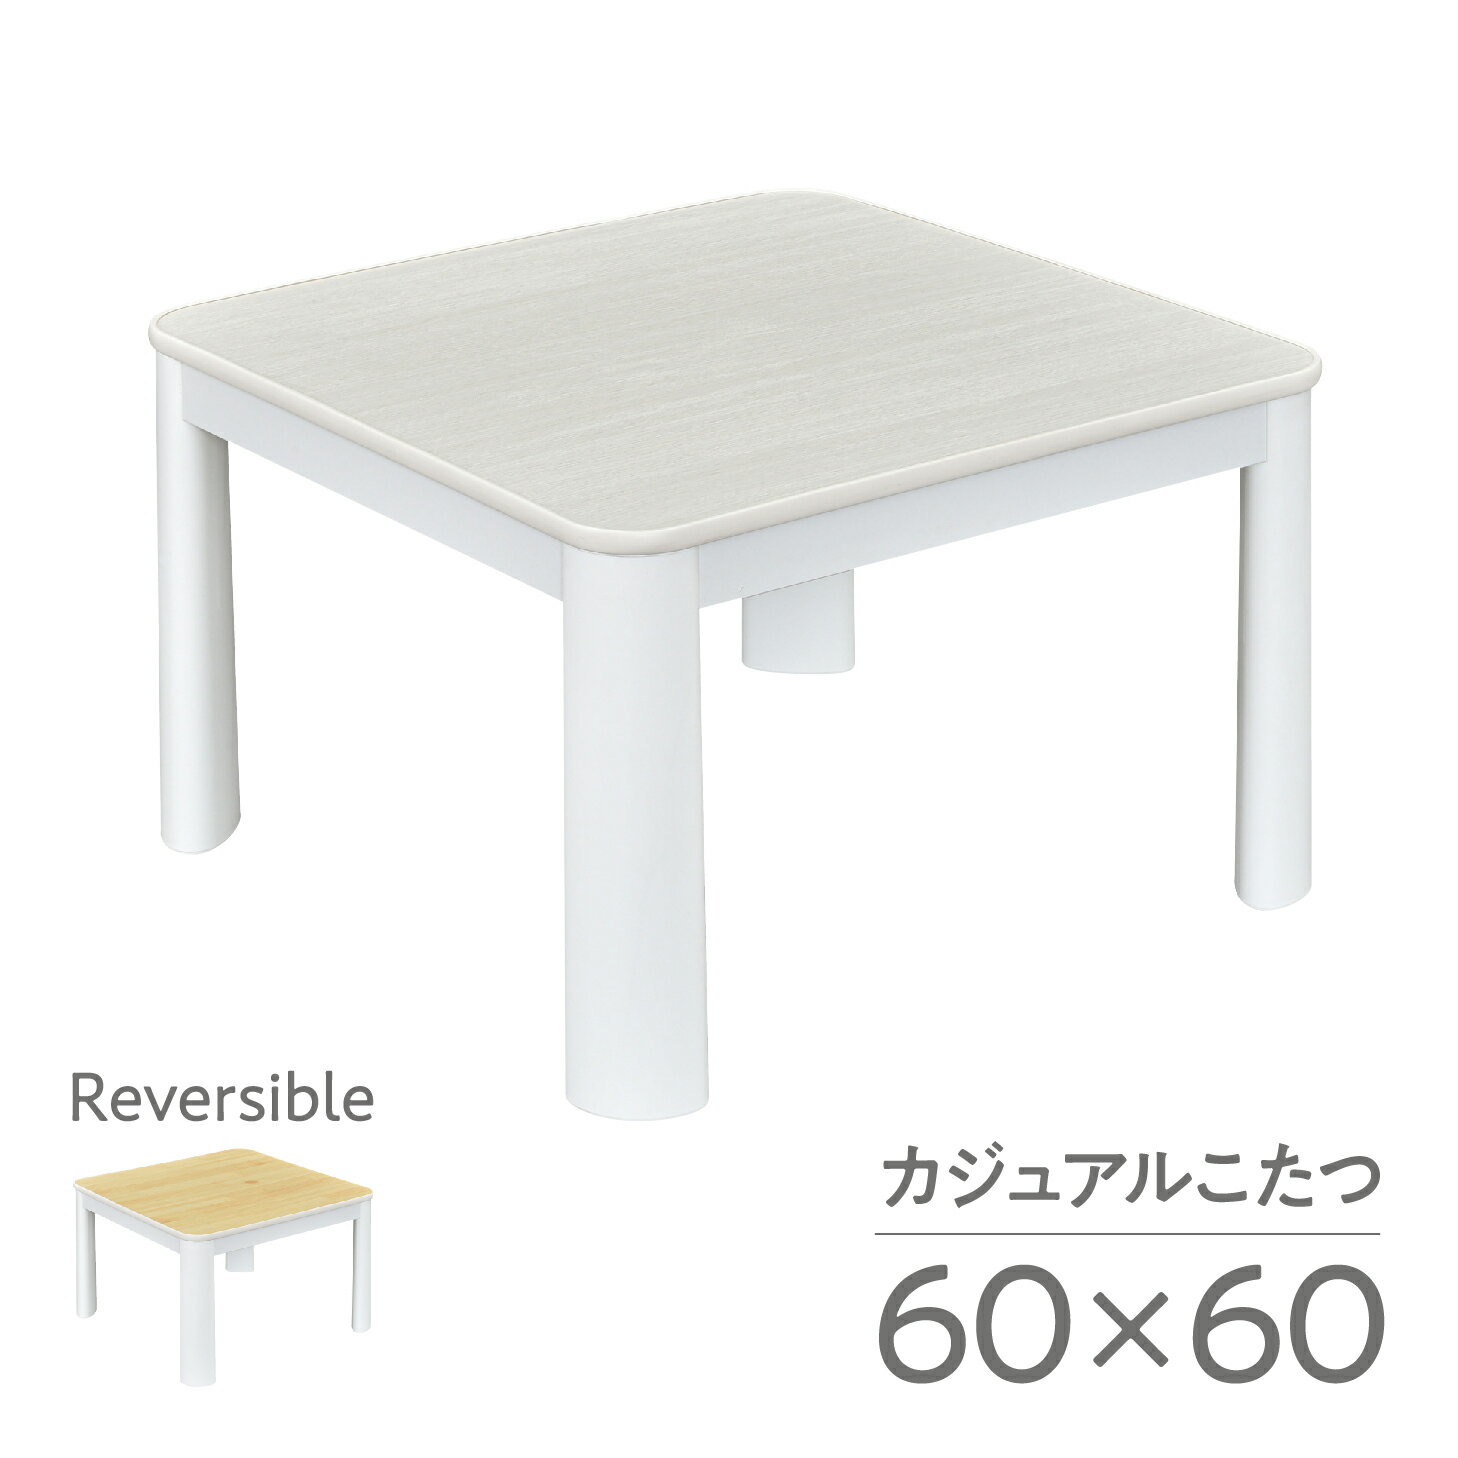  送料無料 こたつ テーブル おしゃれ カジュアル 60×60cm 正方形 コタツ 白 天板 ヒーターユニット メトロ 一人暮らし 木目 白木 シンプル リバーシブル ローテーブル 角丸